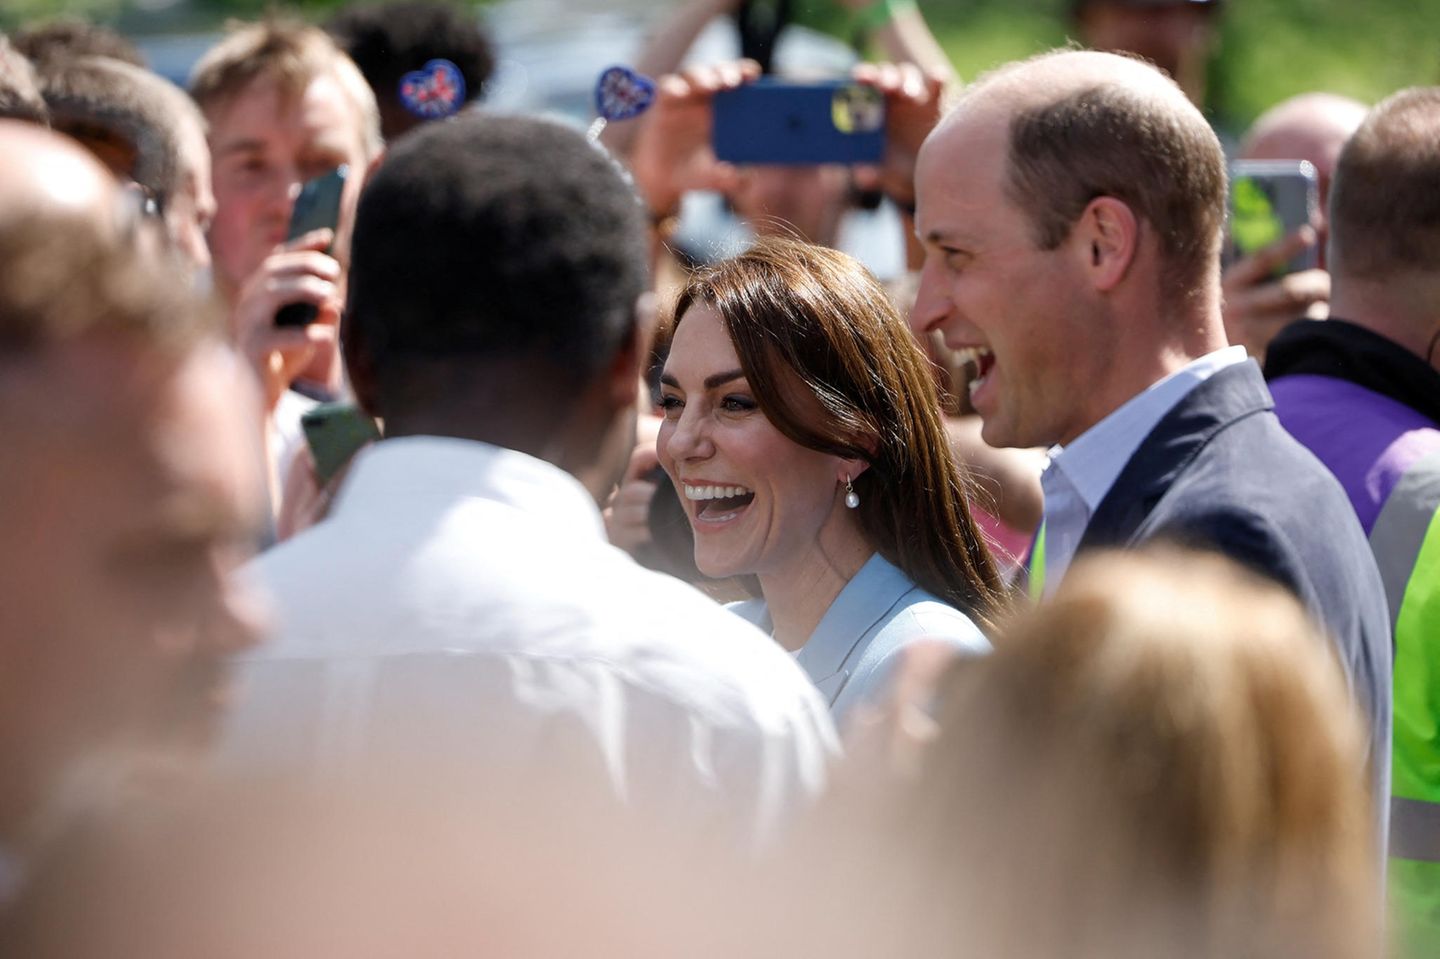 Prinz William und Prinzessin Kate wurden aus dem Nichts in Windsor entdeckt - zur Begeisterung der anwesenden Feiernden.